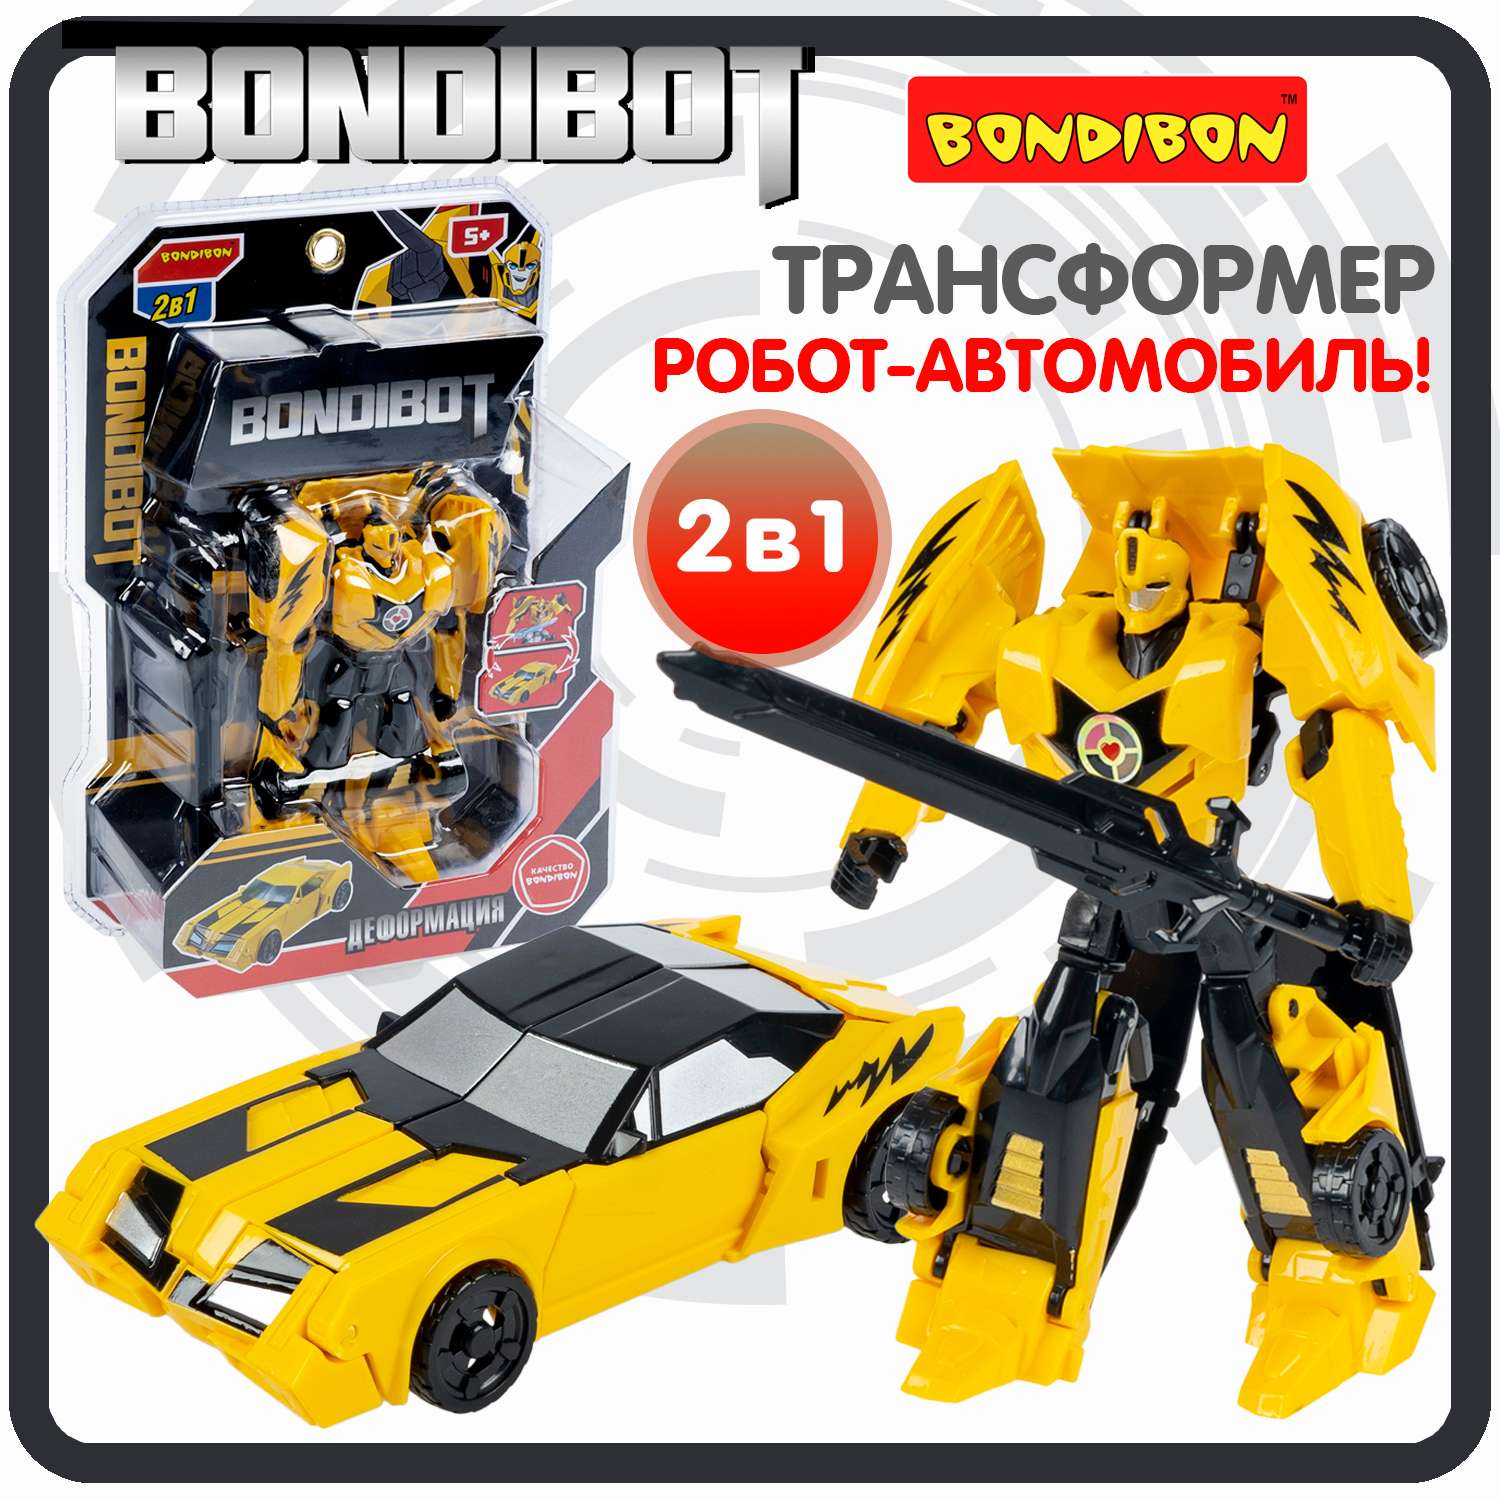 Трансформер BONDIBON BONDIBOT 2 в 1 робот-автомобиль желтого цвета - фото 1